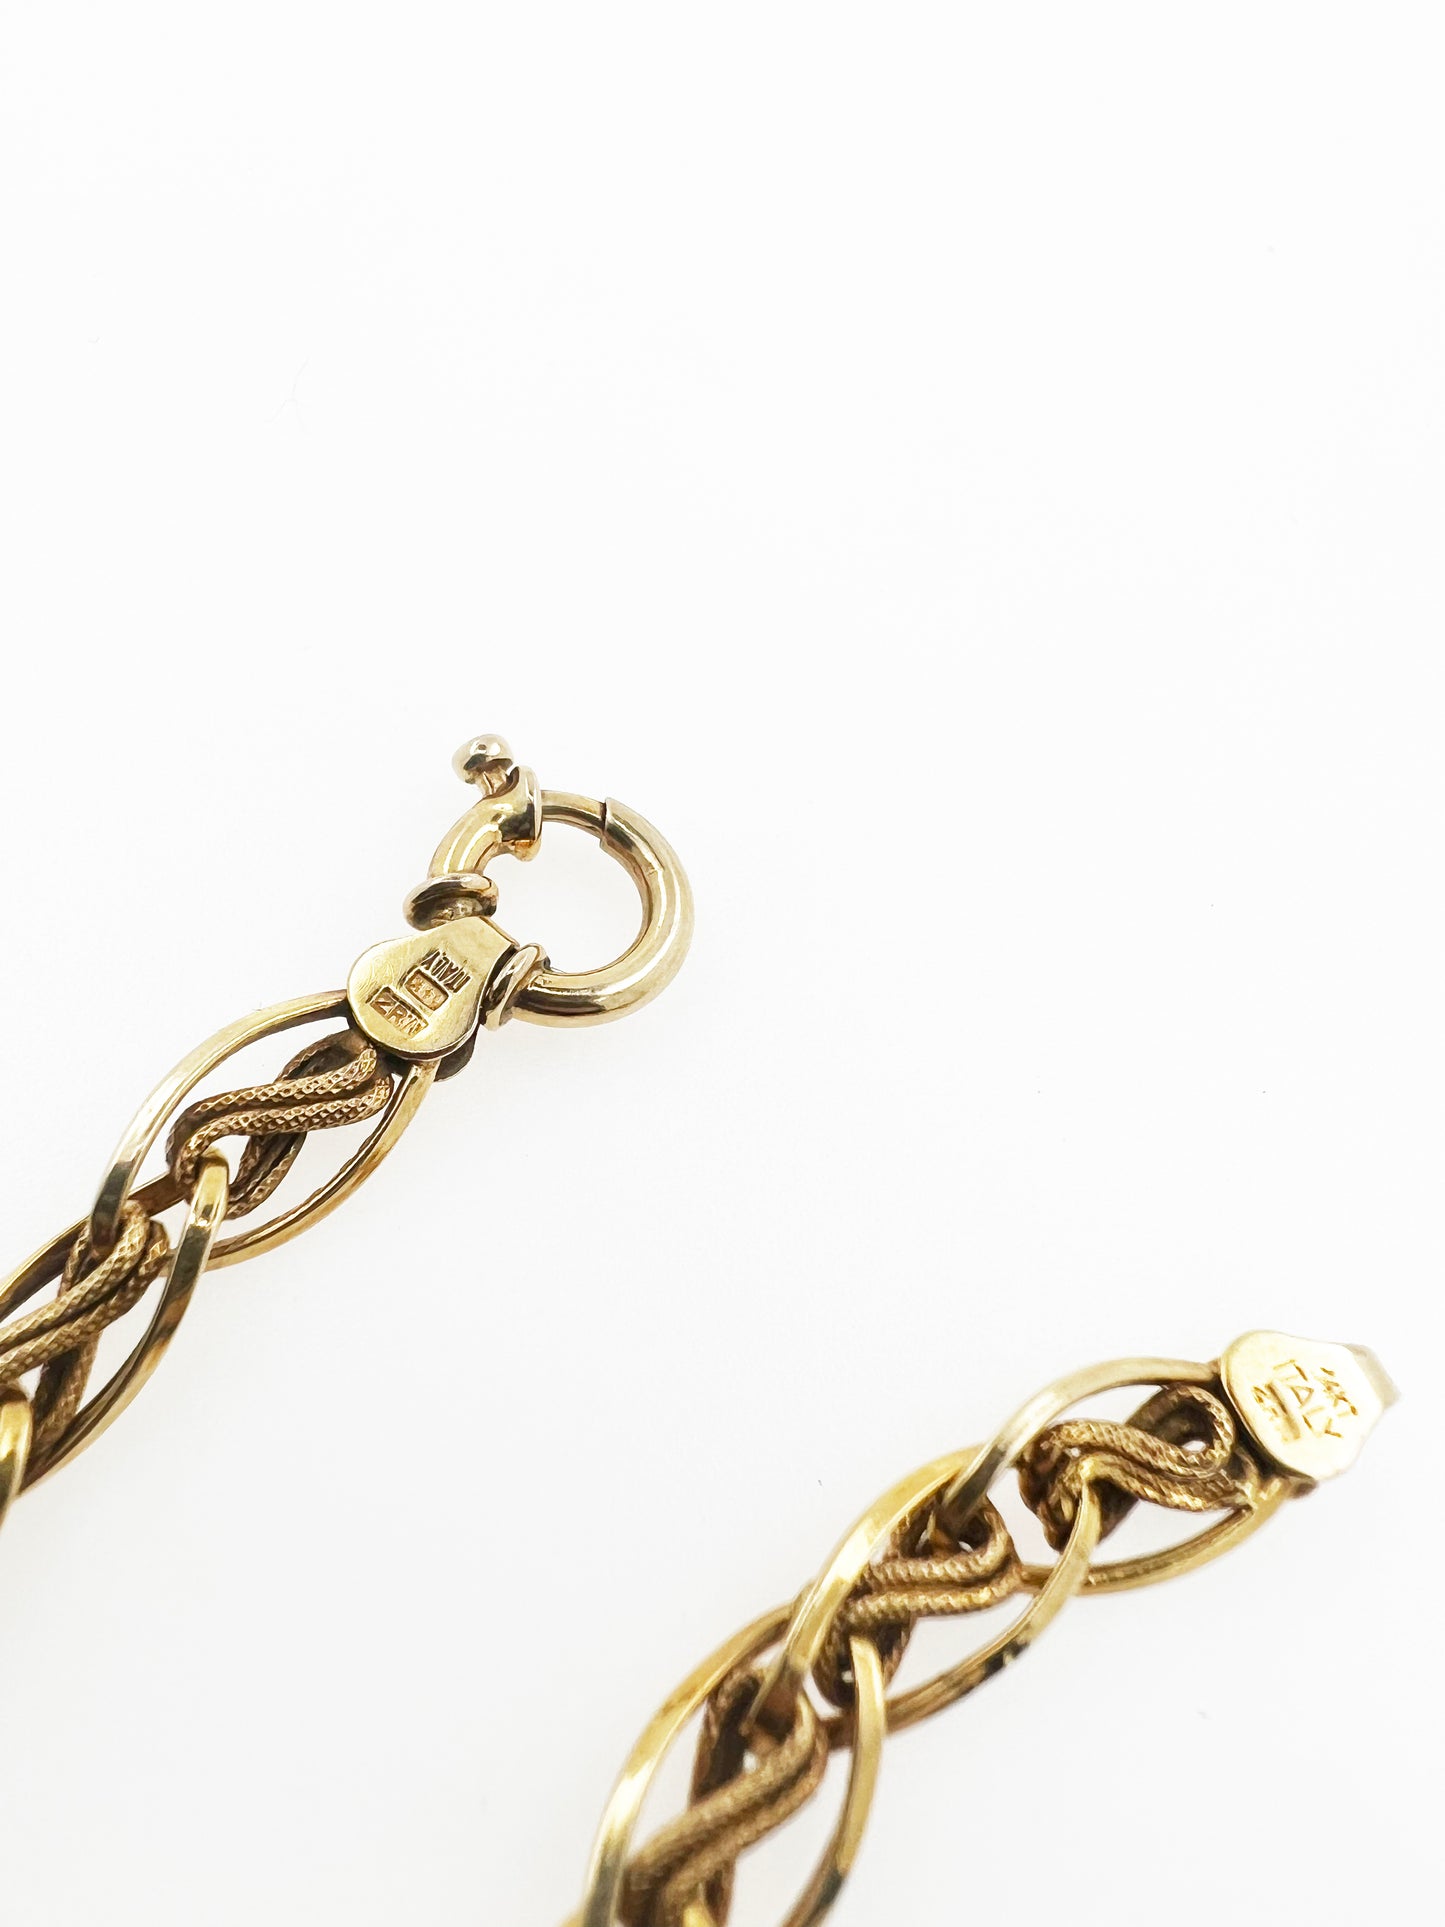 Vintage Italian Link Bracelet in 14k Yellow Gold